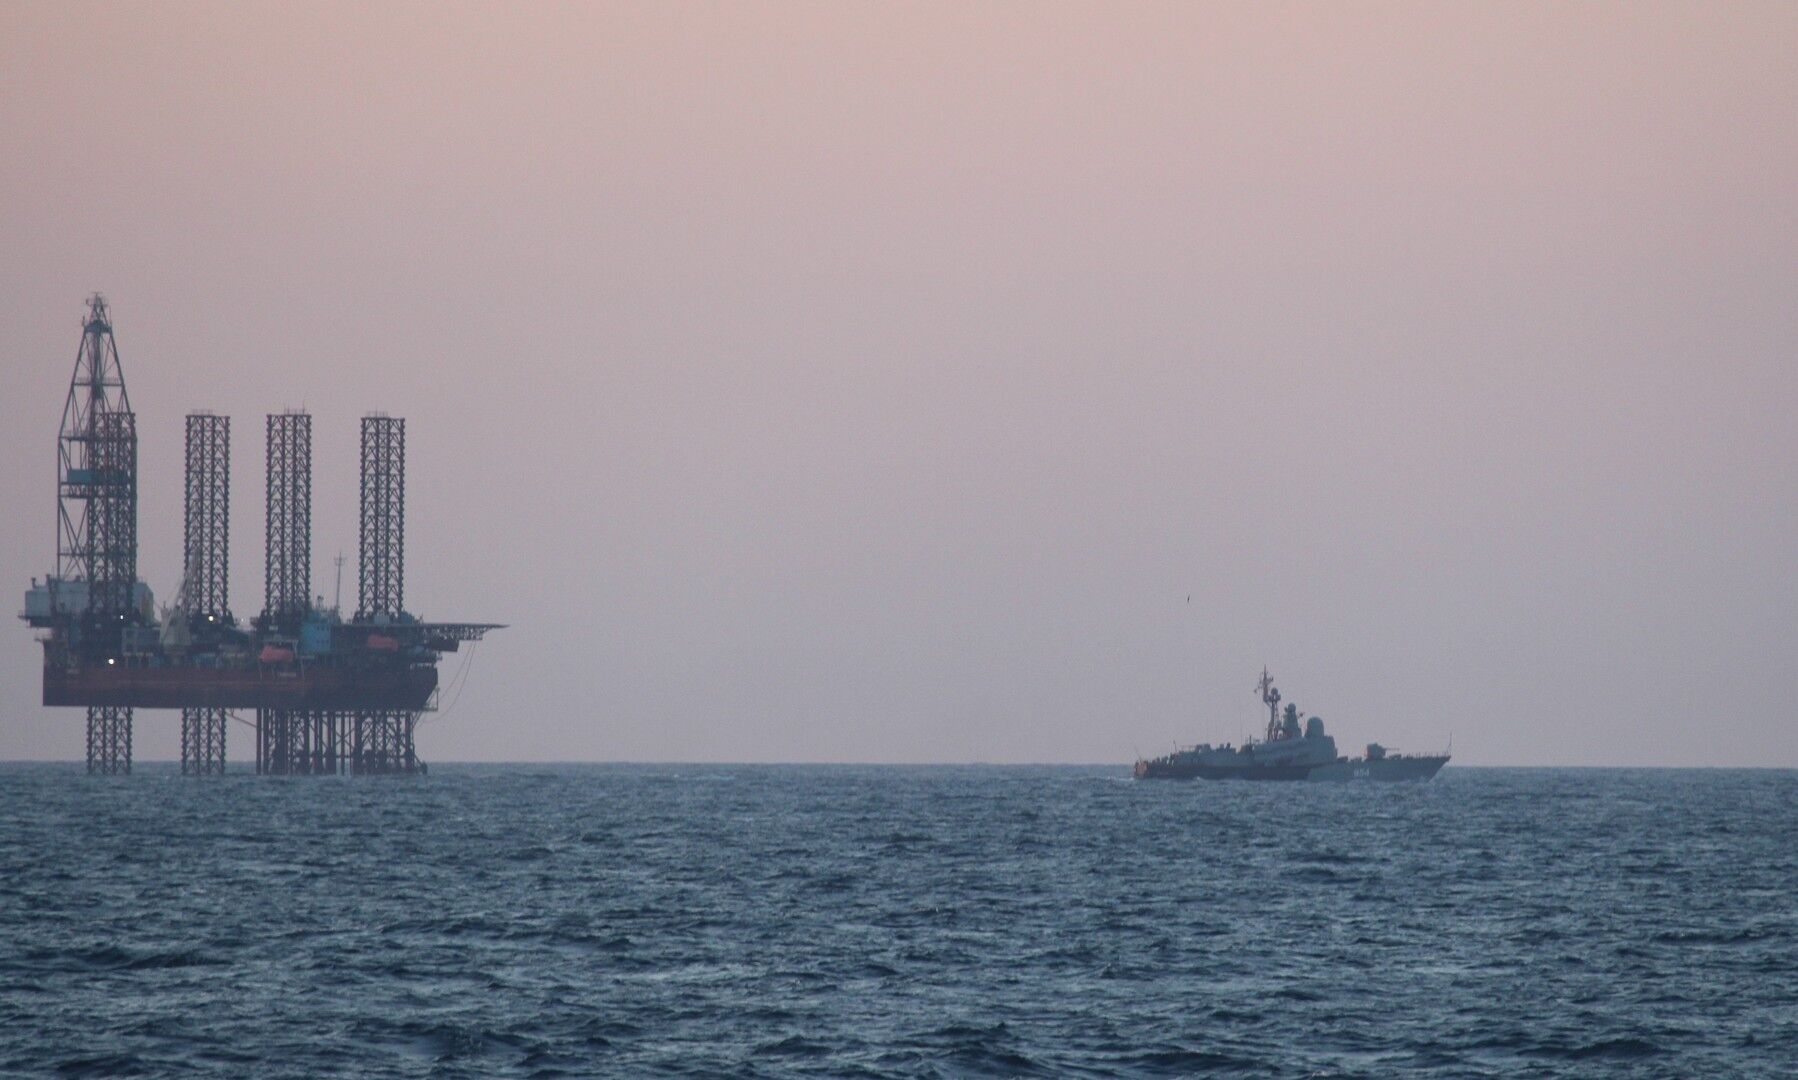 Росія під прикриттям військових кораблів краде український газ в Чорному морі